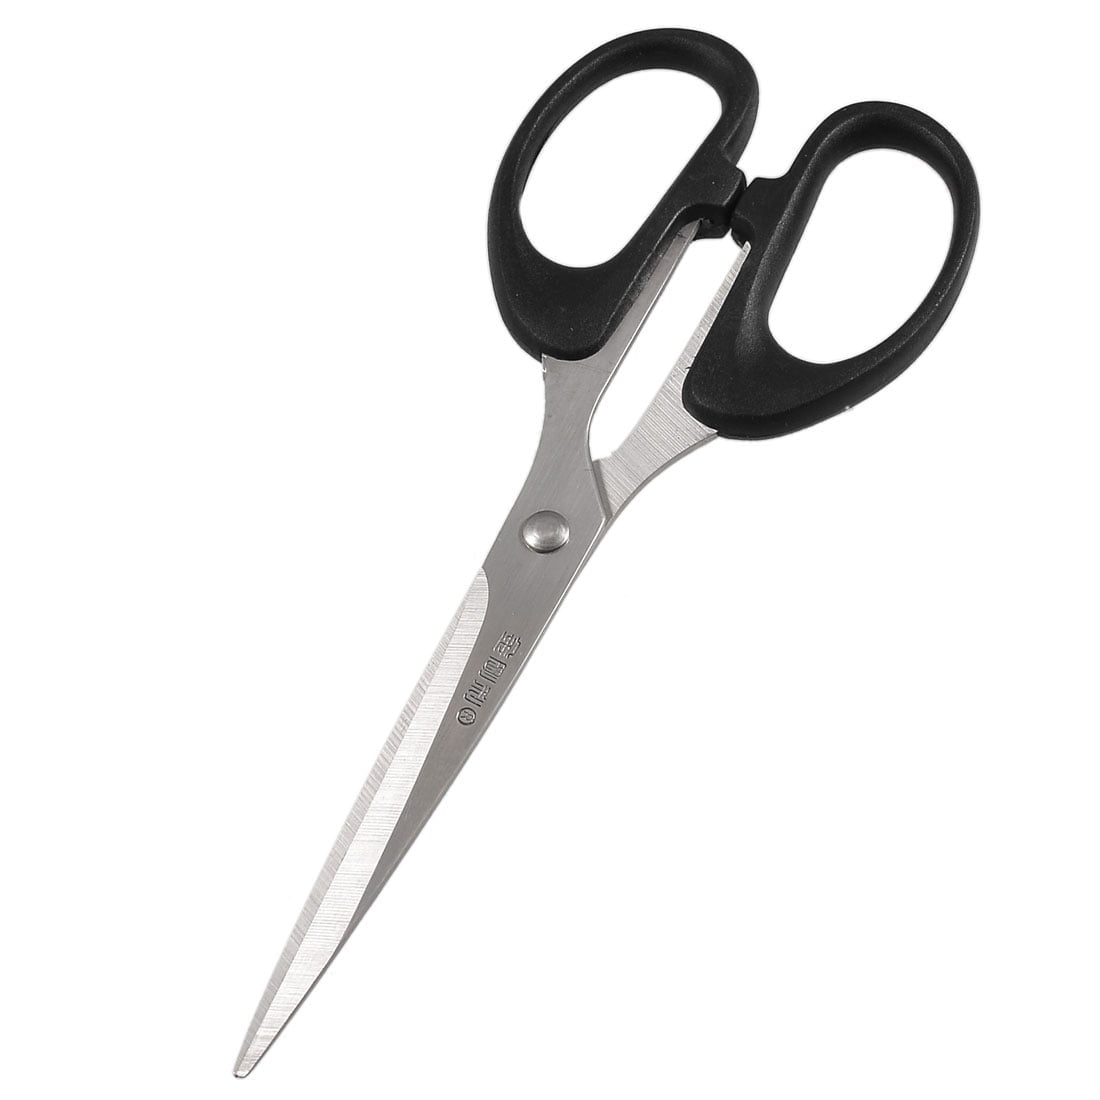 Unique Bargains Home Office Black Handgrip Sharp Metal Scissors Shear